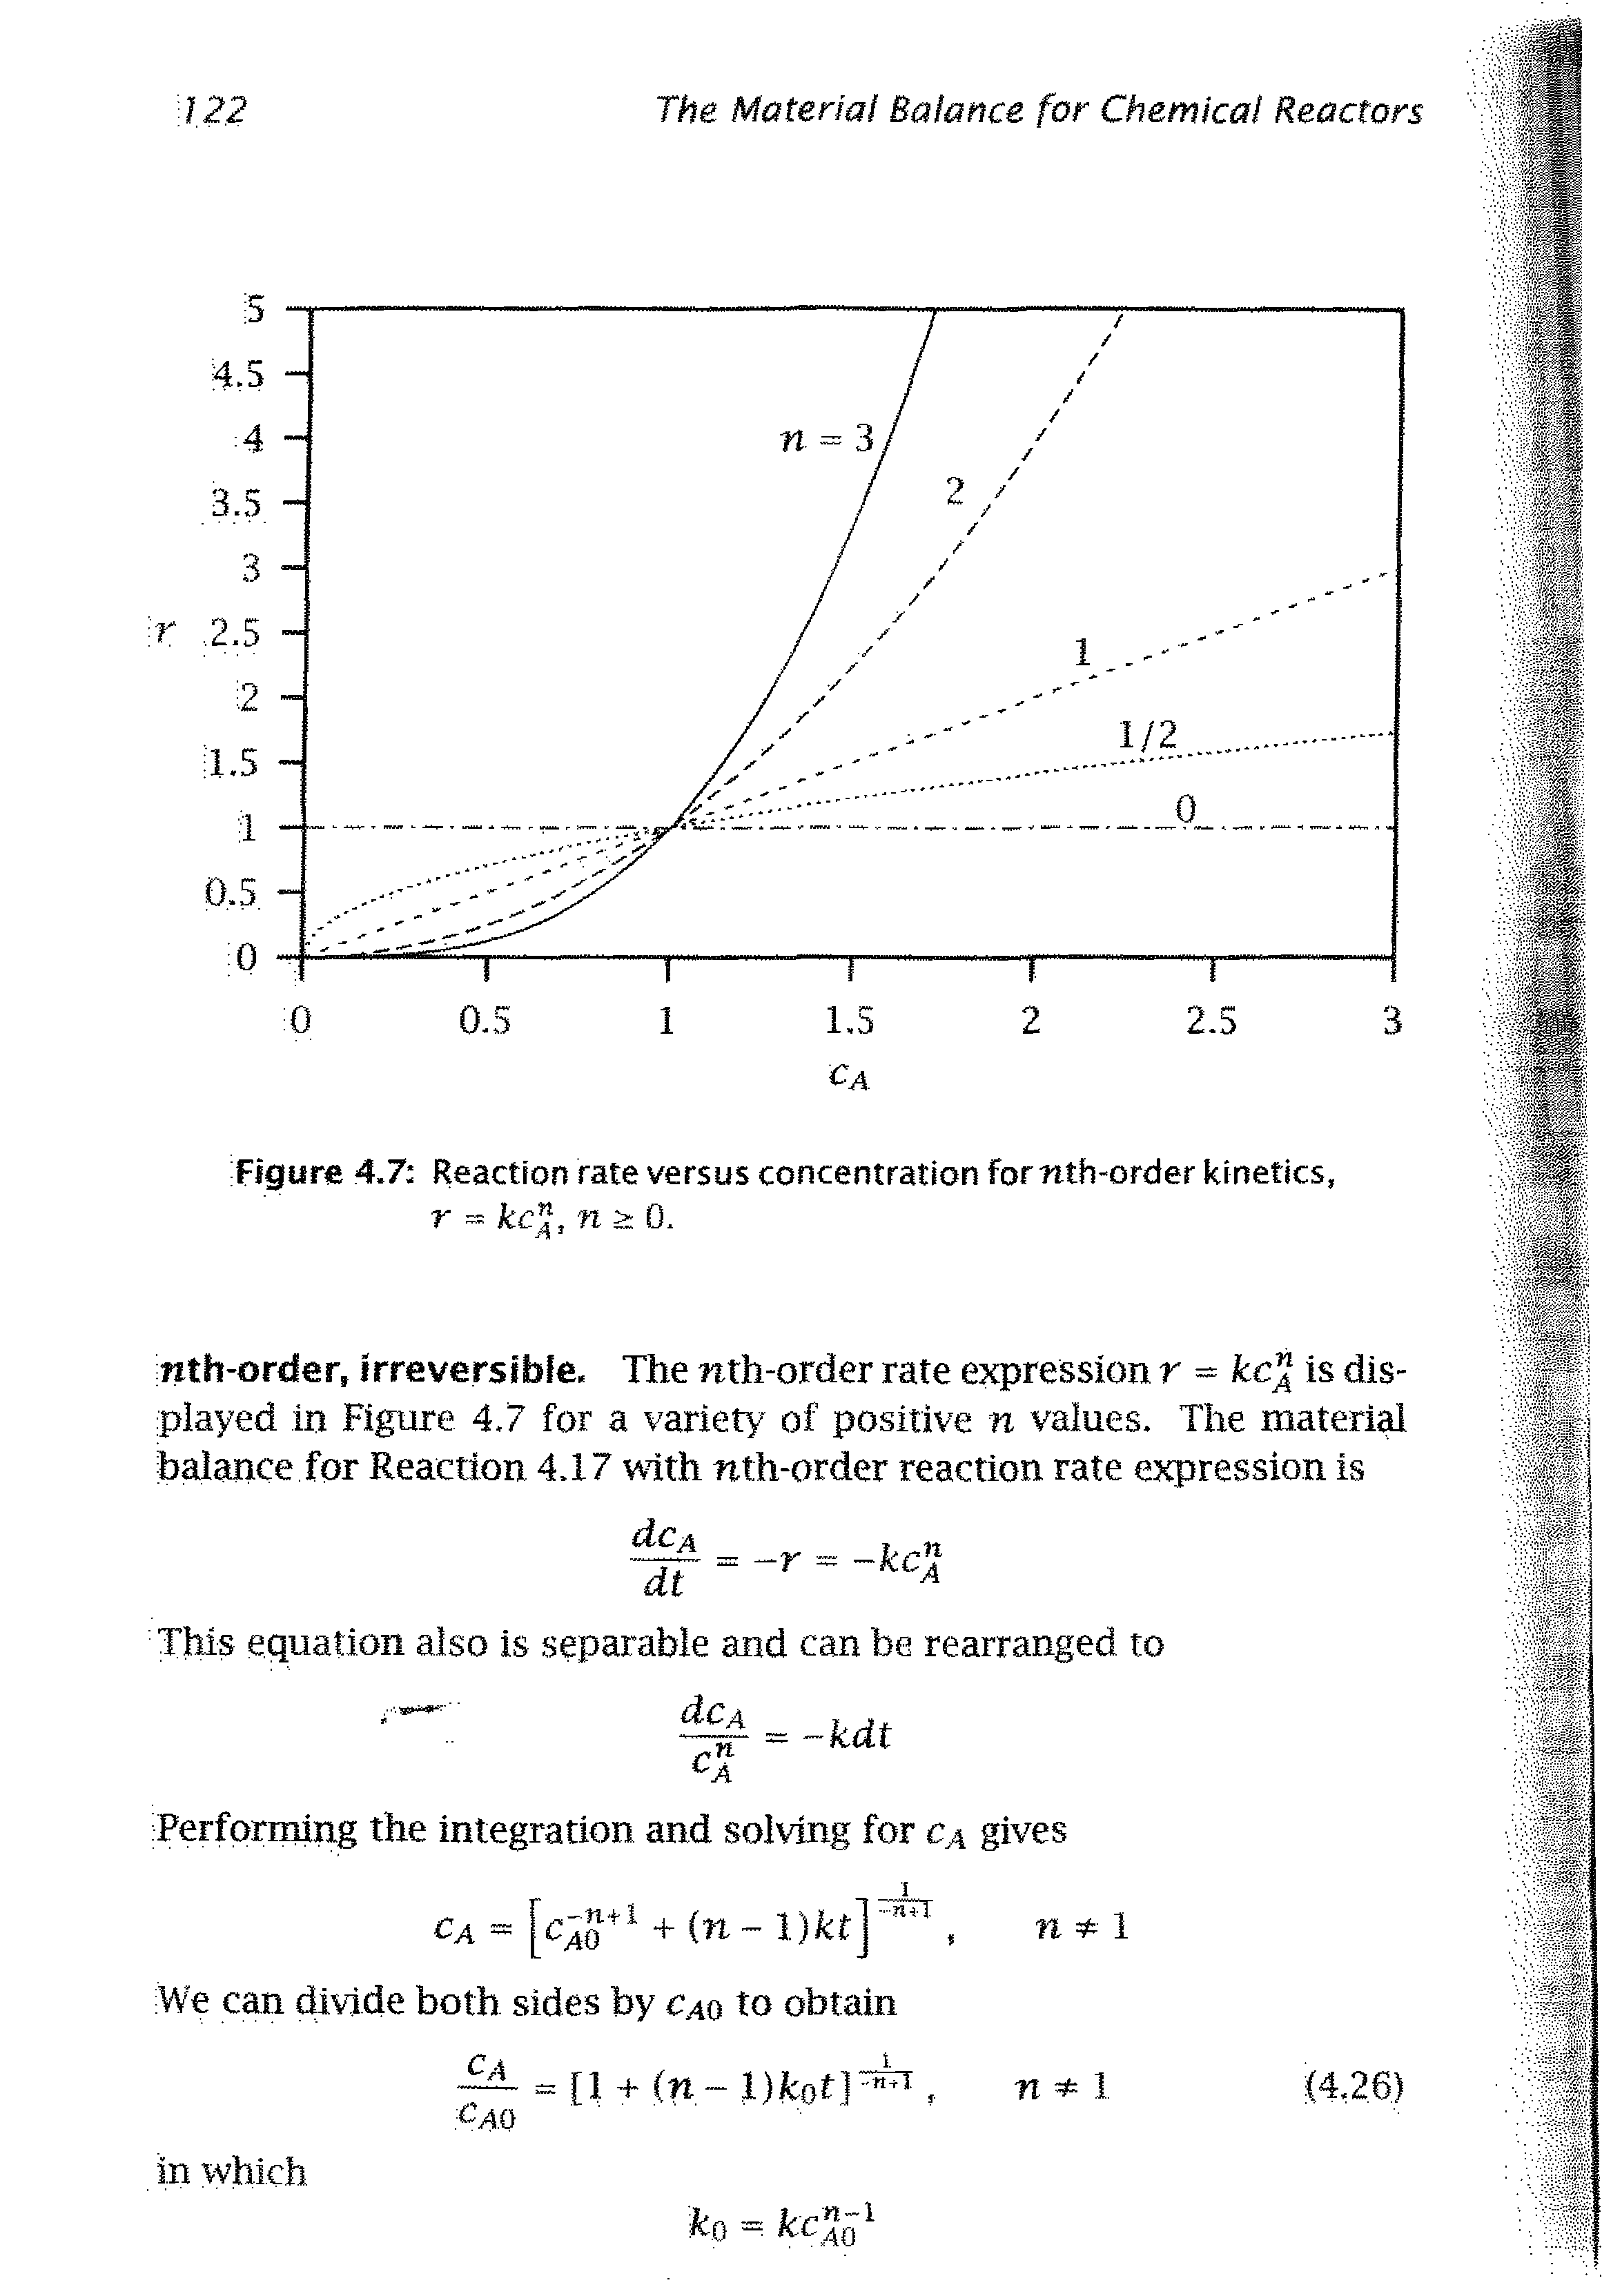 Figure 4.7 Reaction rate versus concentration fornth-order kinetics, r kc, n > 0.